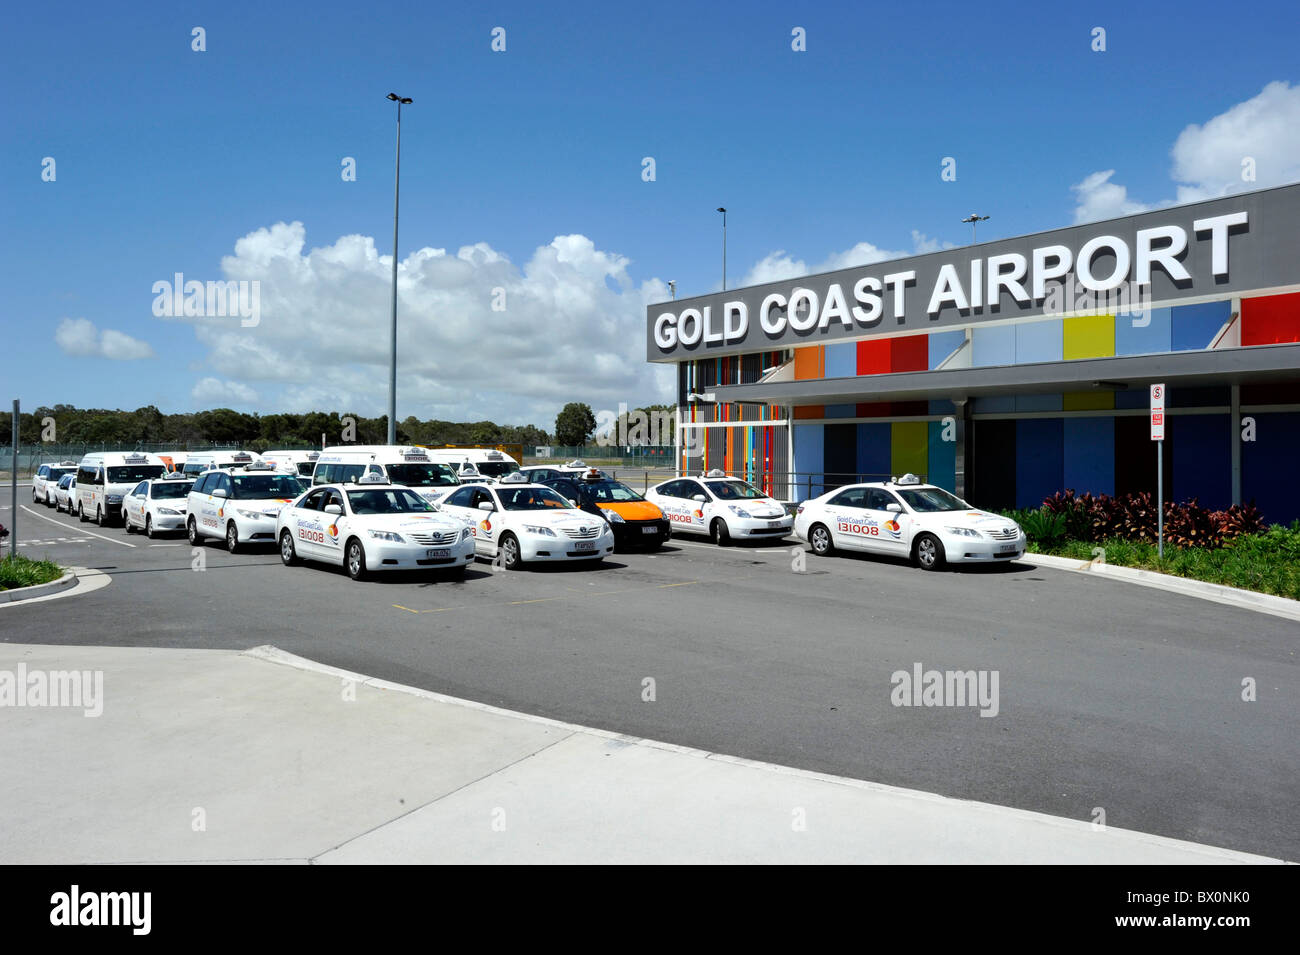 Hvilken en planer Motherland Gold coast airport hi-res stock photography and images - Alamy